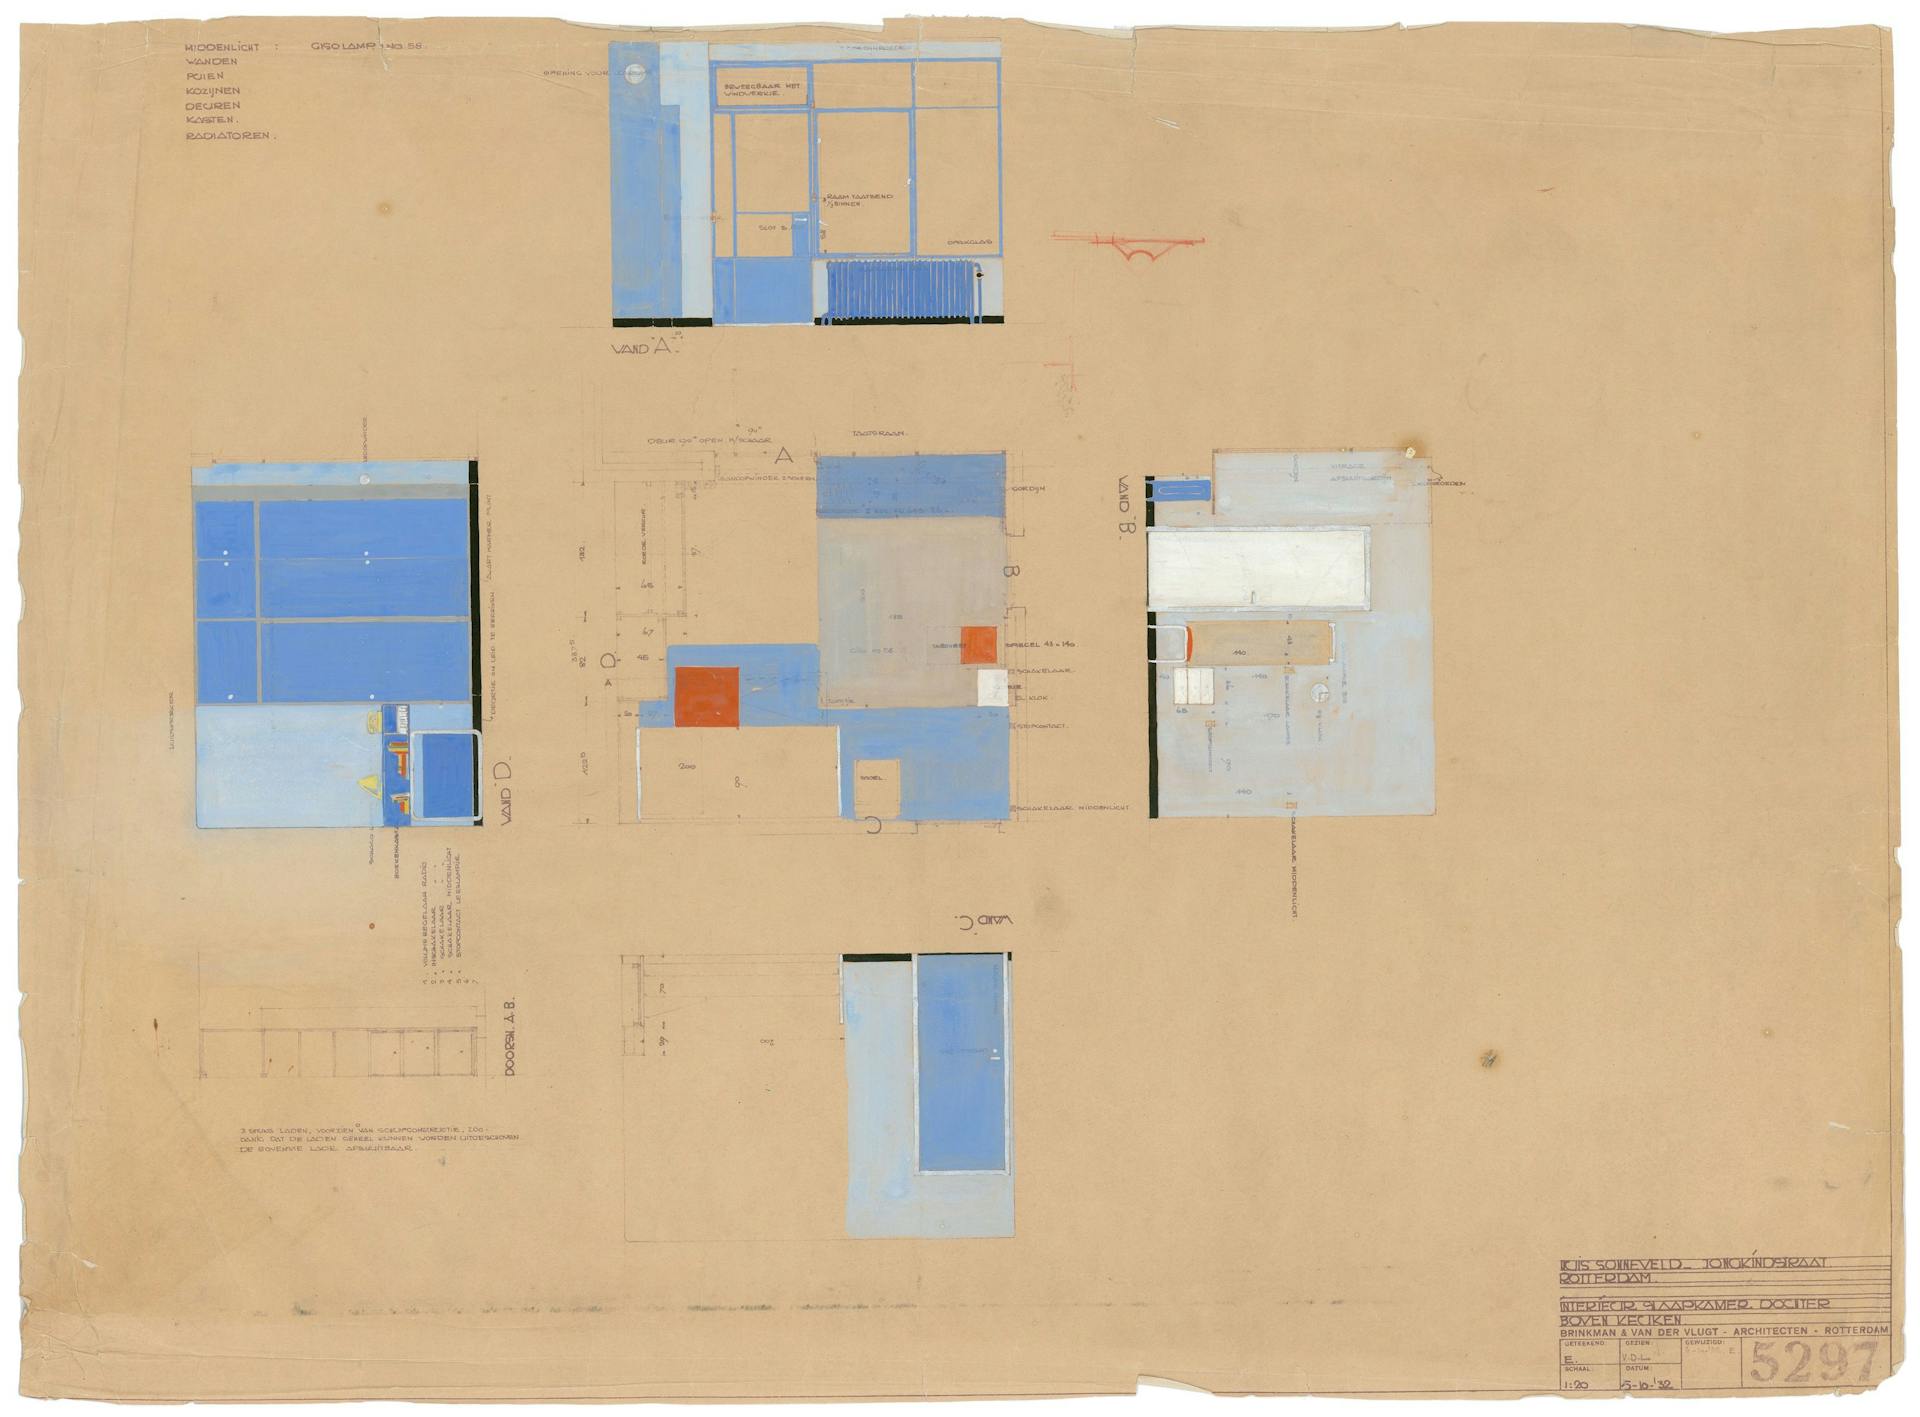 J.A. Brinkman en L.C. van der Vlugt. Interieur slaapkamer dochters, Huis Sonneveld, 1932. Collectie Het Nieuwe Instituut, BROX 93t21 